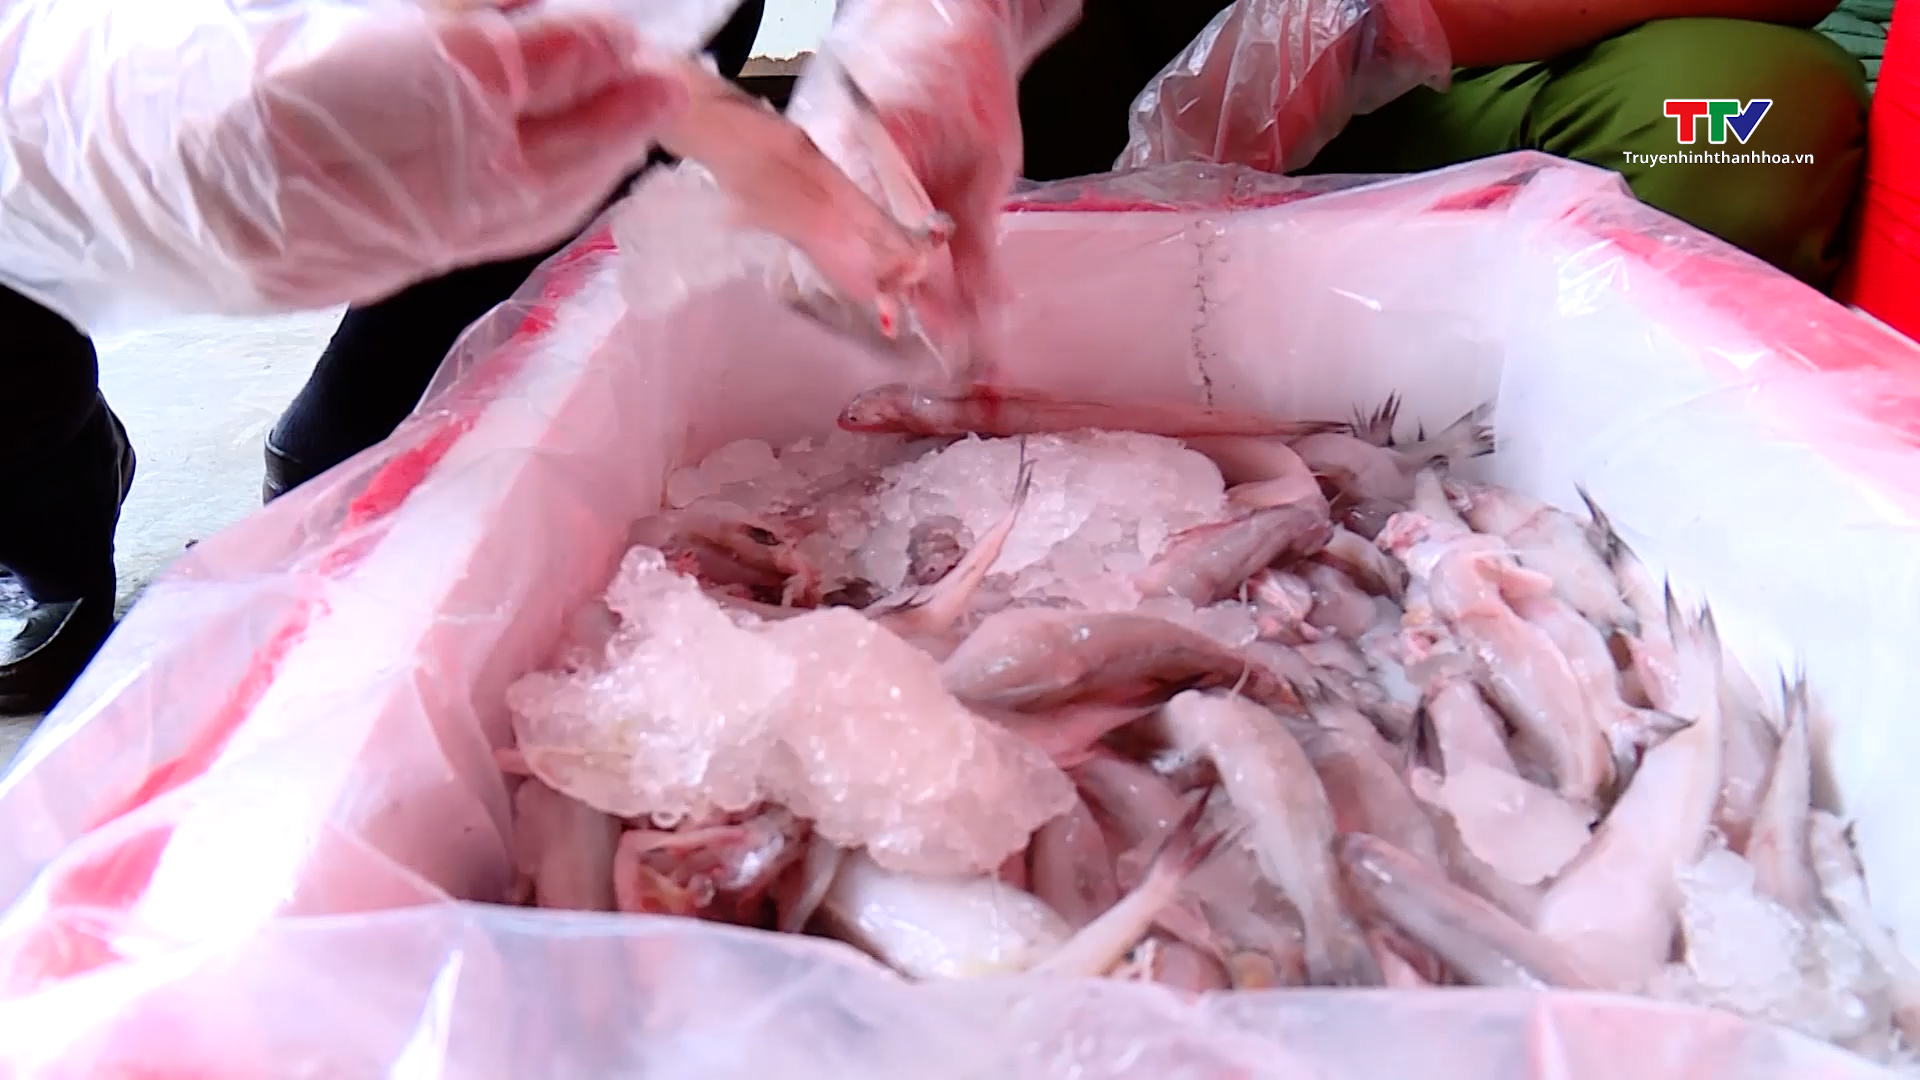 Đội Quản lý thị trường số 10, Cục Quản lý thị trường Thanh Hóa tiêu hủy trên 4.500 kg cá khoai nhiễm Formaldehyte- Ảnh 1.